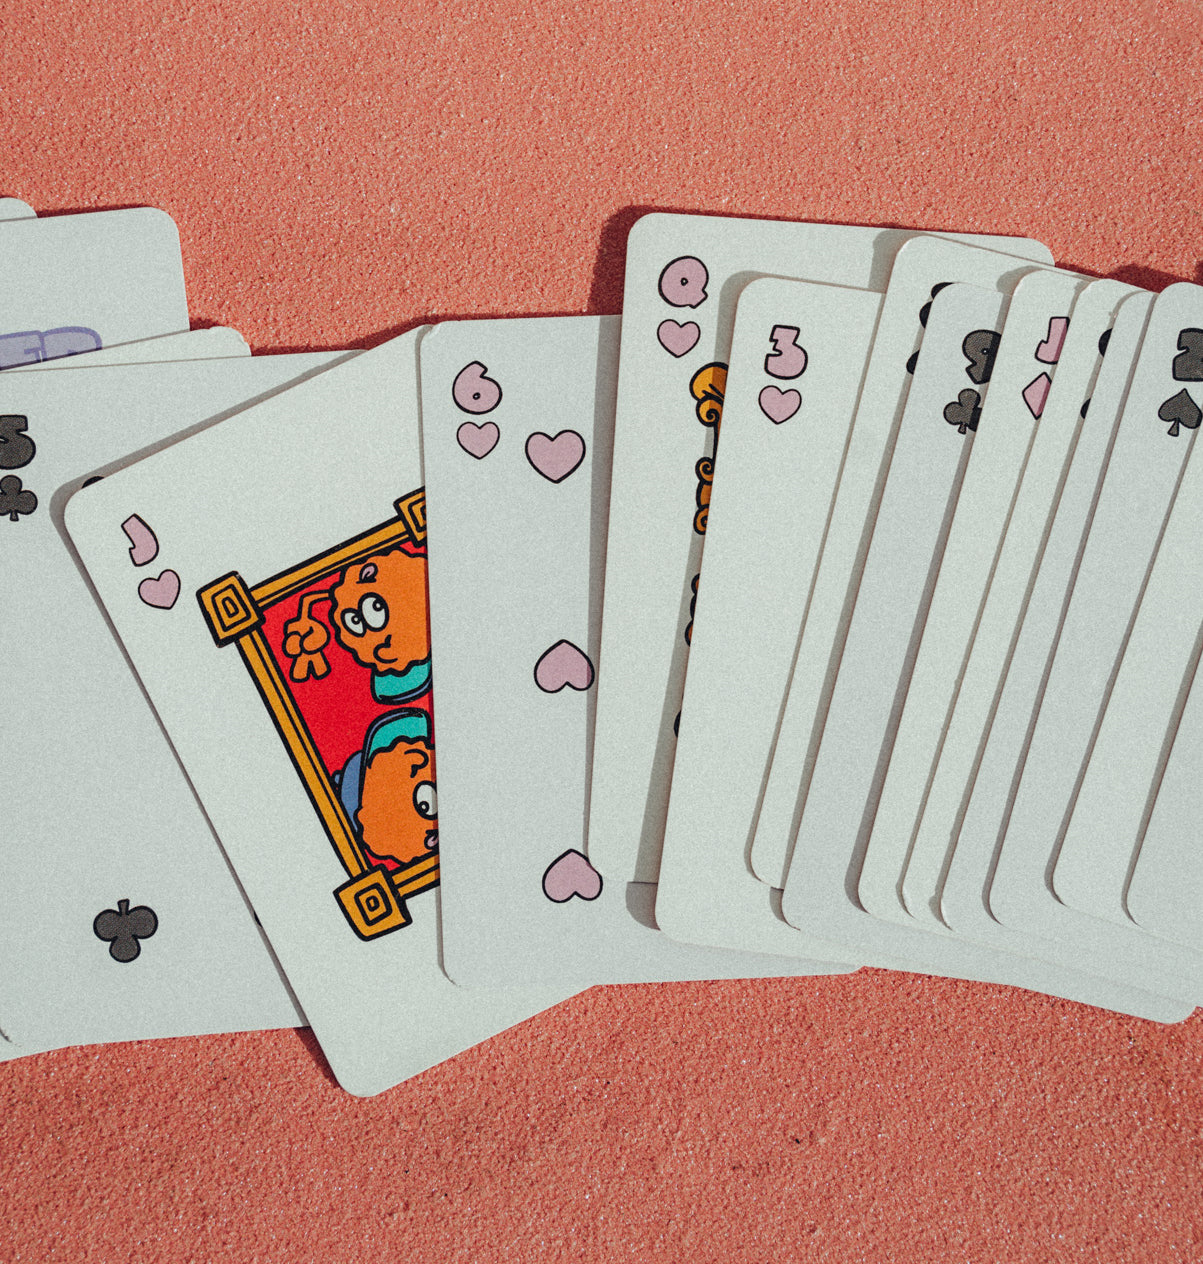 8enjamin playing cards